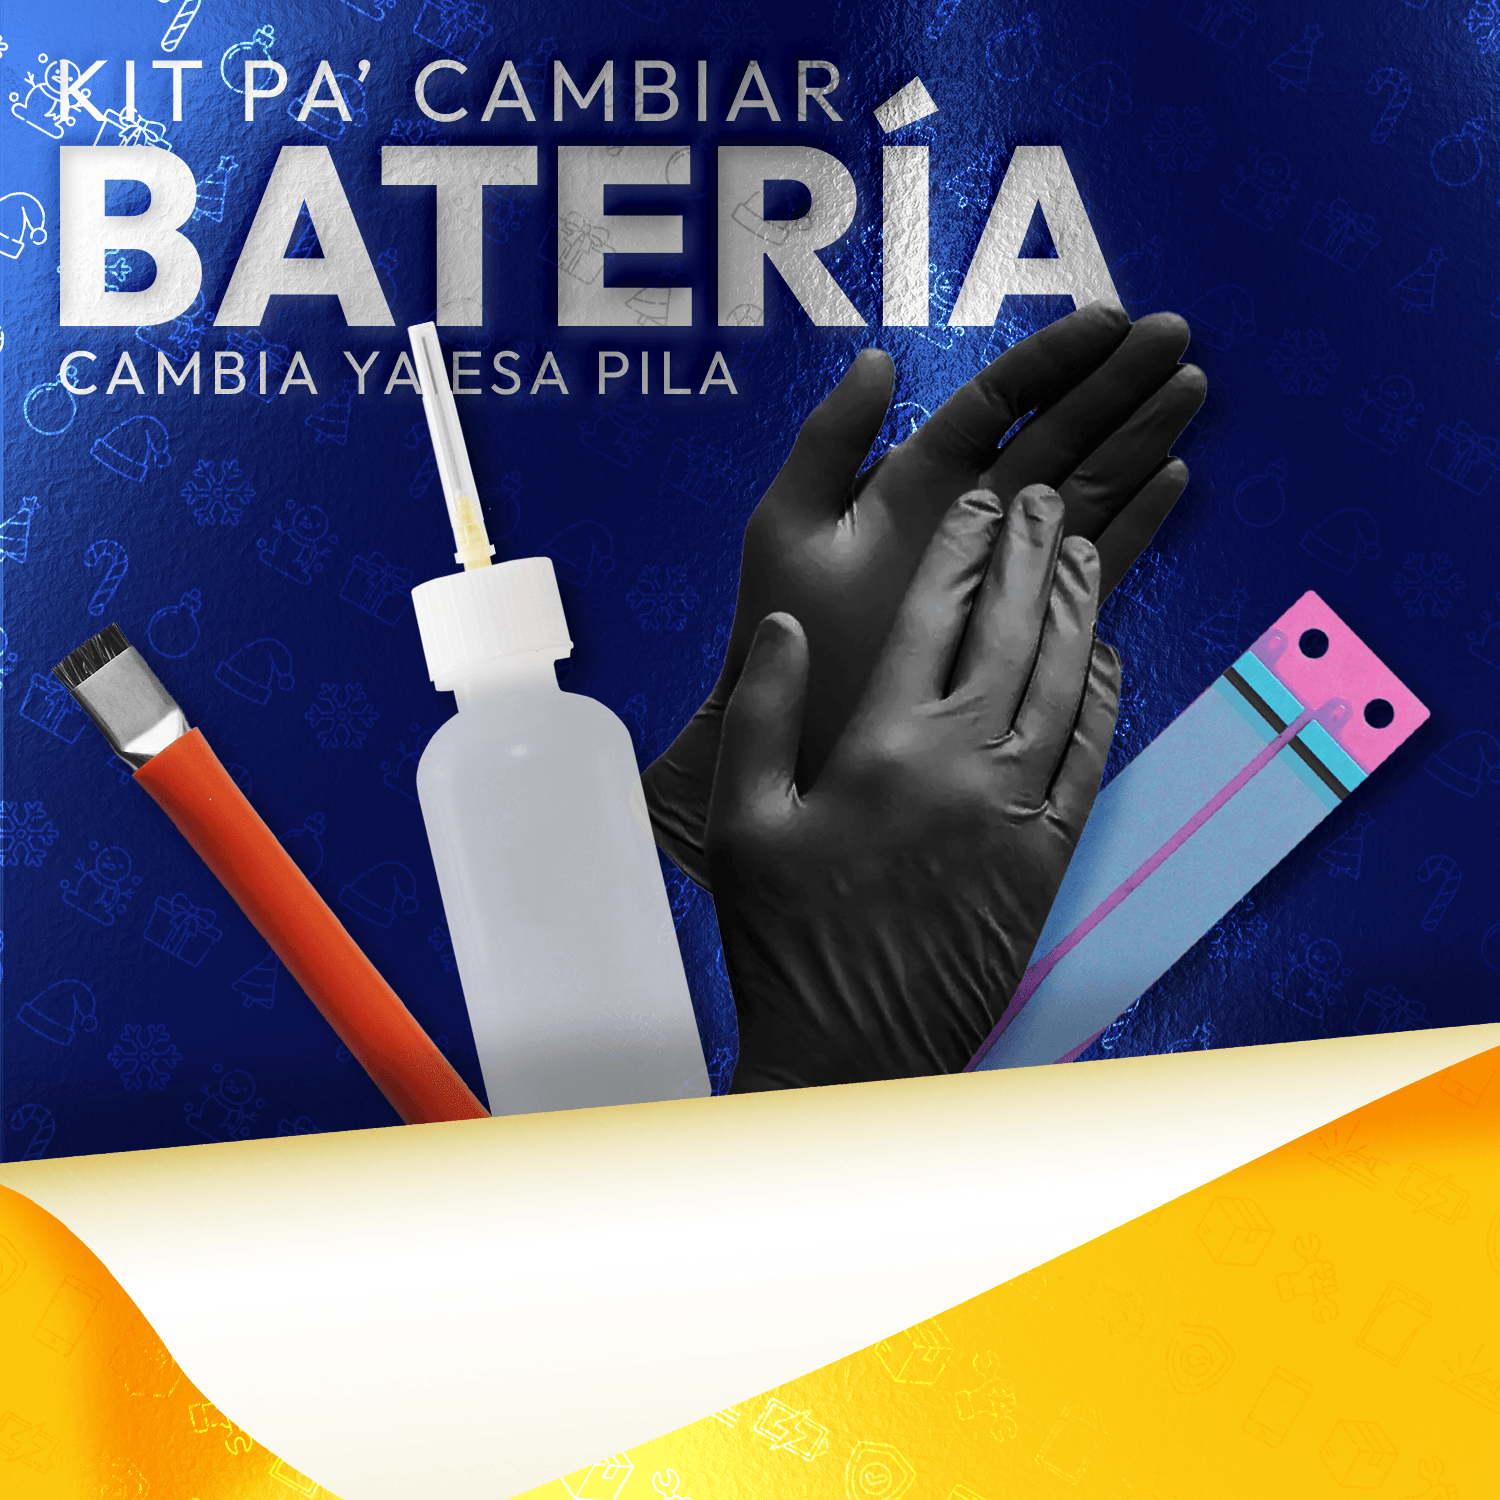 Kit Pa' Cambiar Batería | FixOEM a solo $ 165.00 Refaccion y puestos celulares, refurbish y microelectronica.- FixOEM